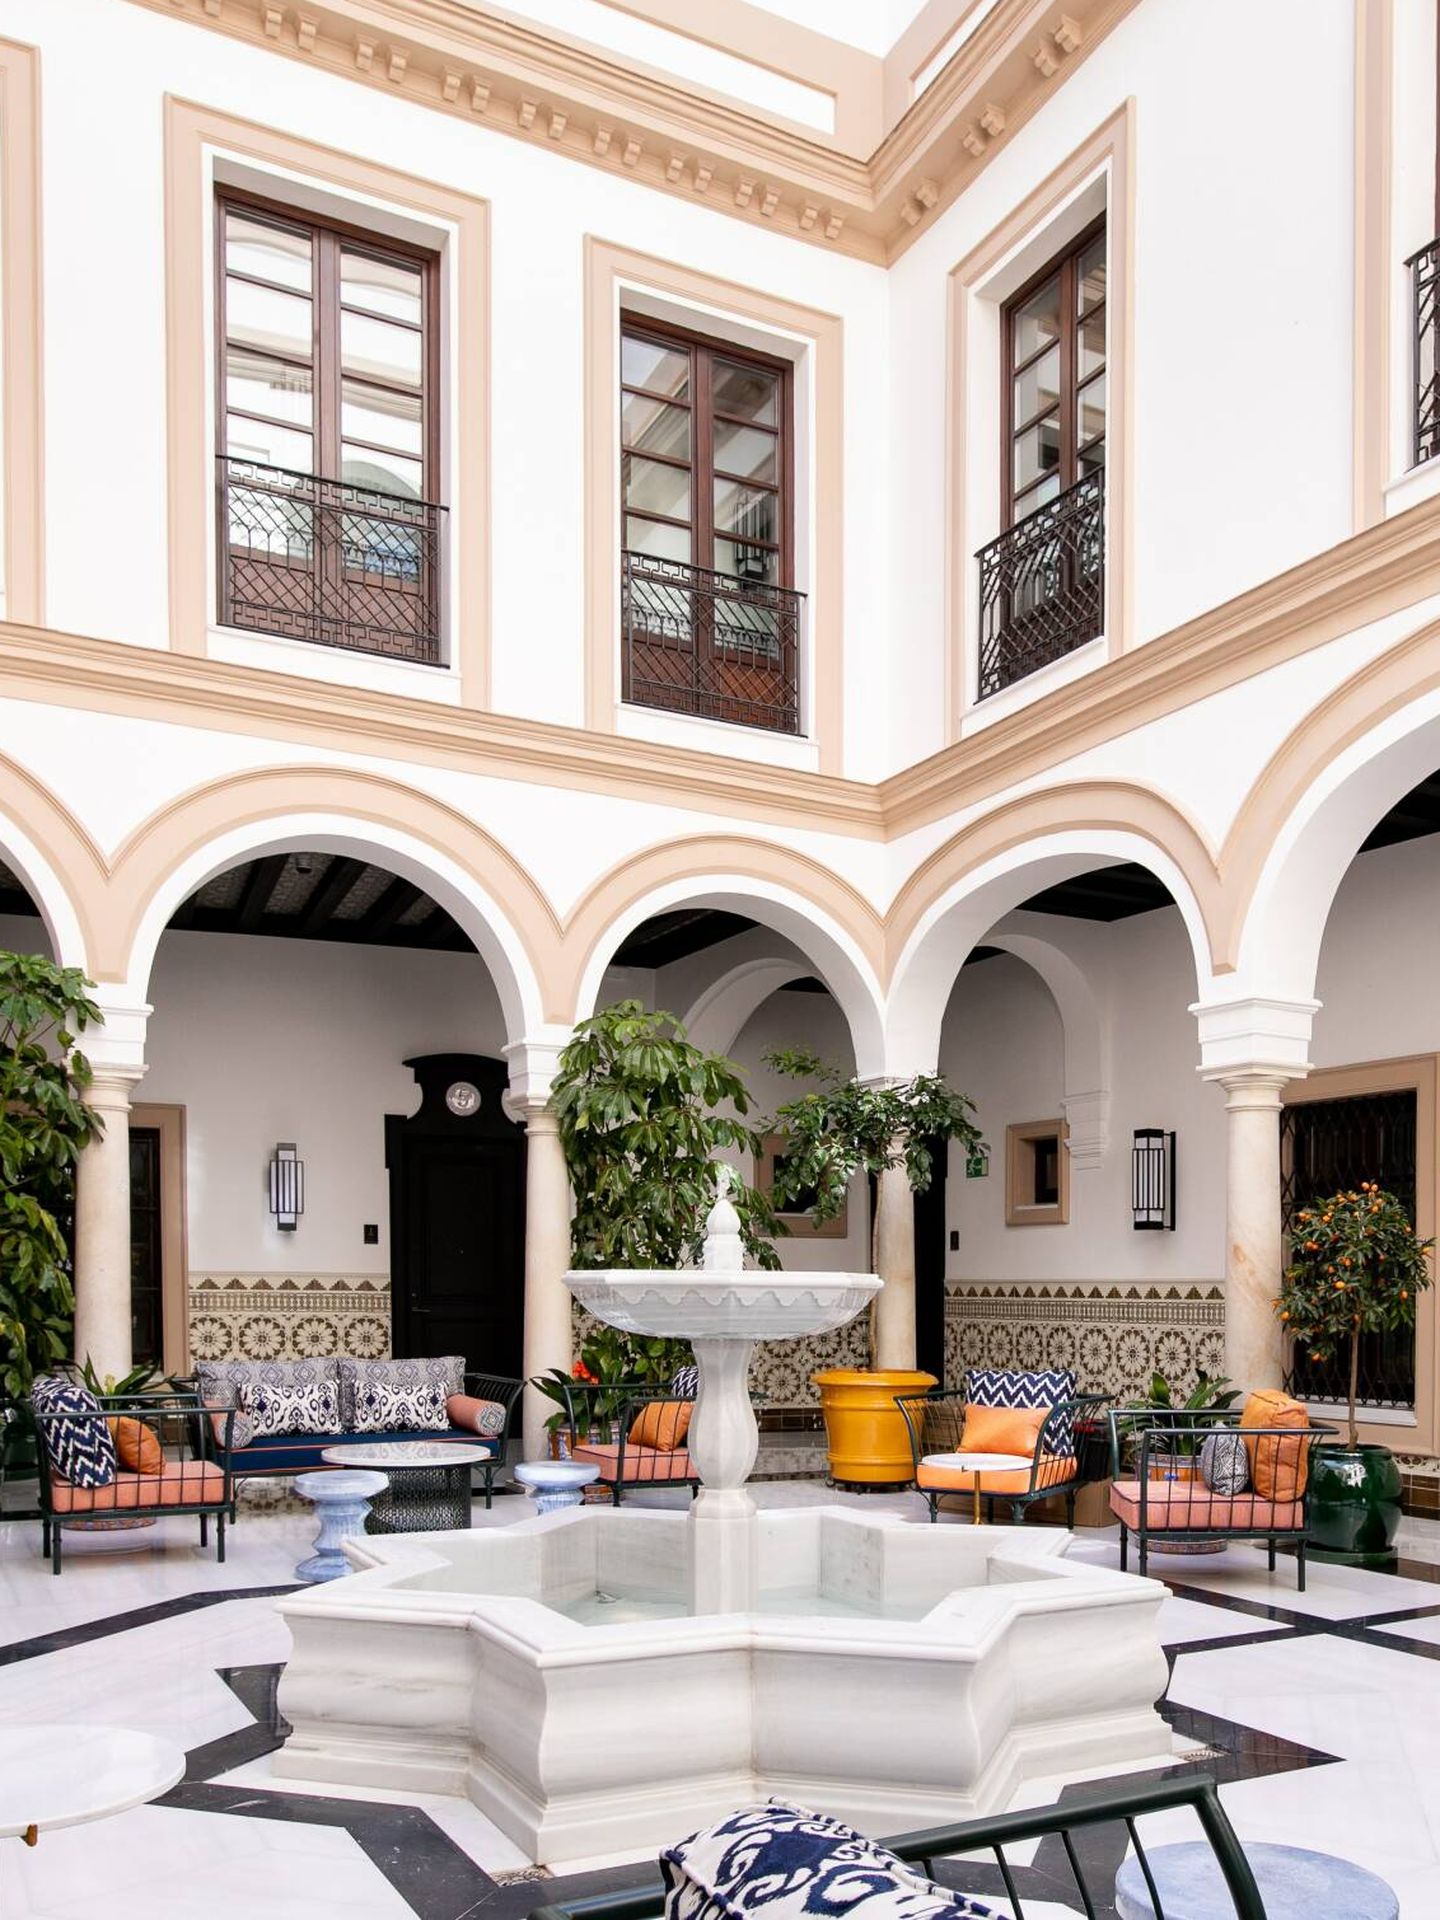 El patio andaluz de Casa Palacio Don Ramón. (Cortesía)